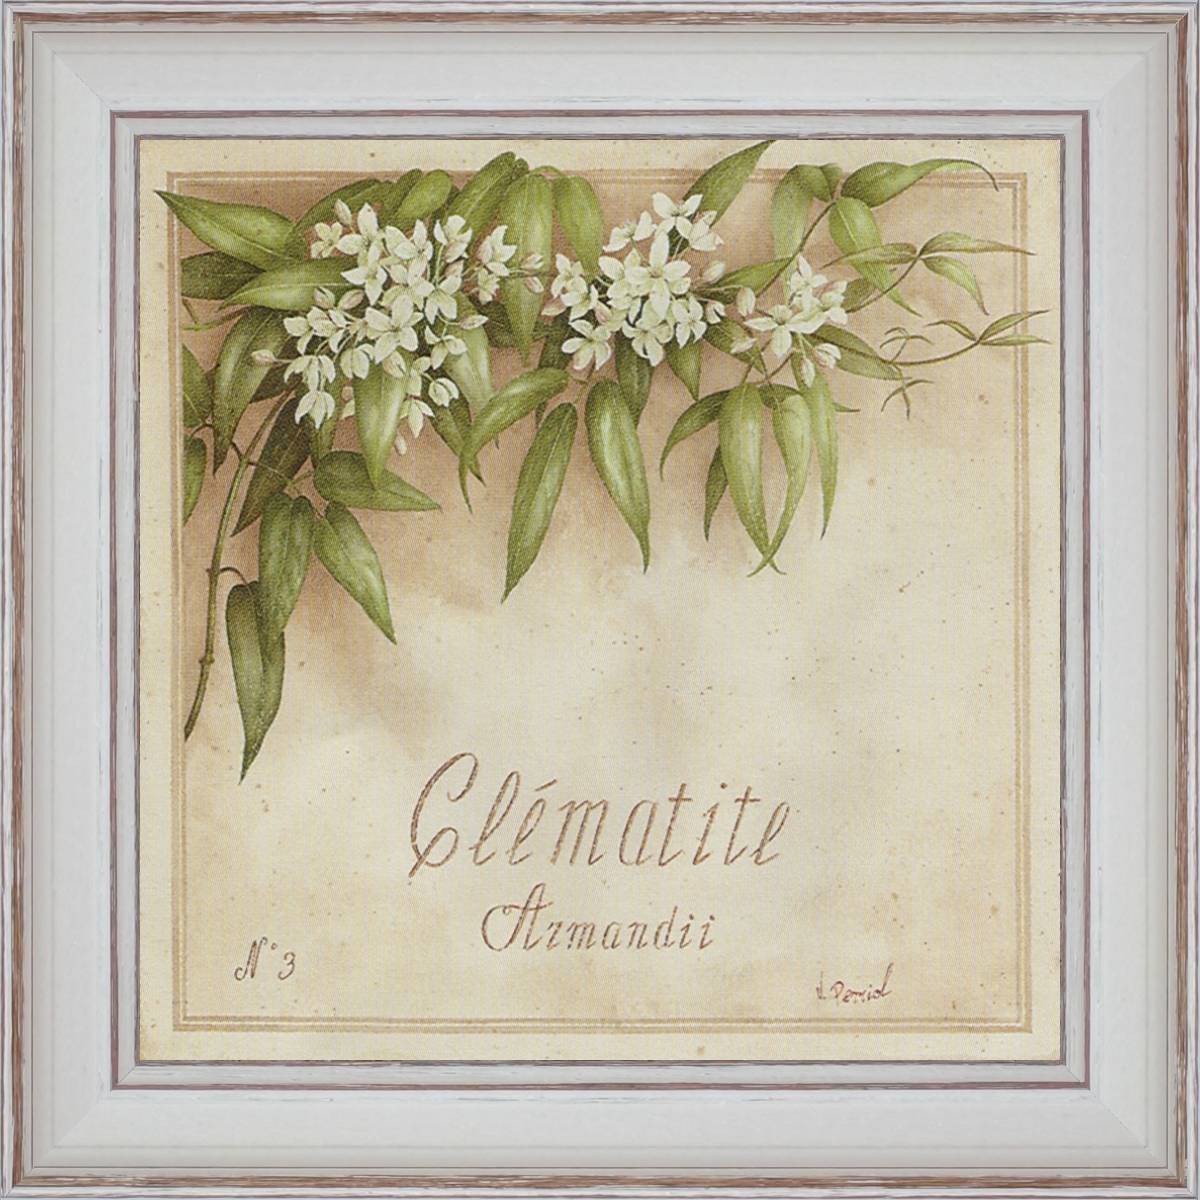 Clématite, Armandii - painting detail 40 x 40 cm